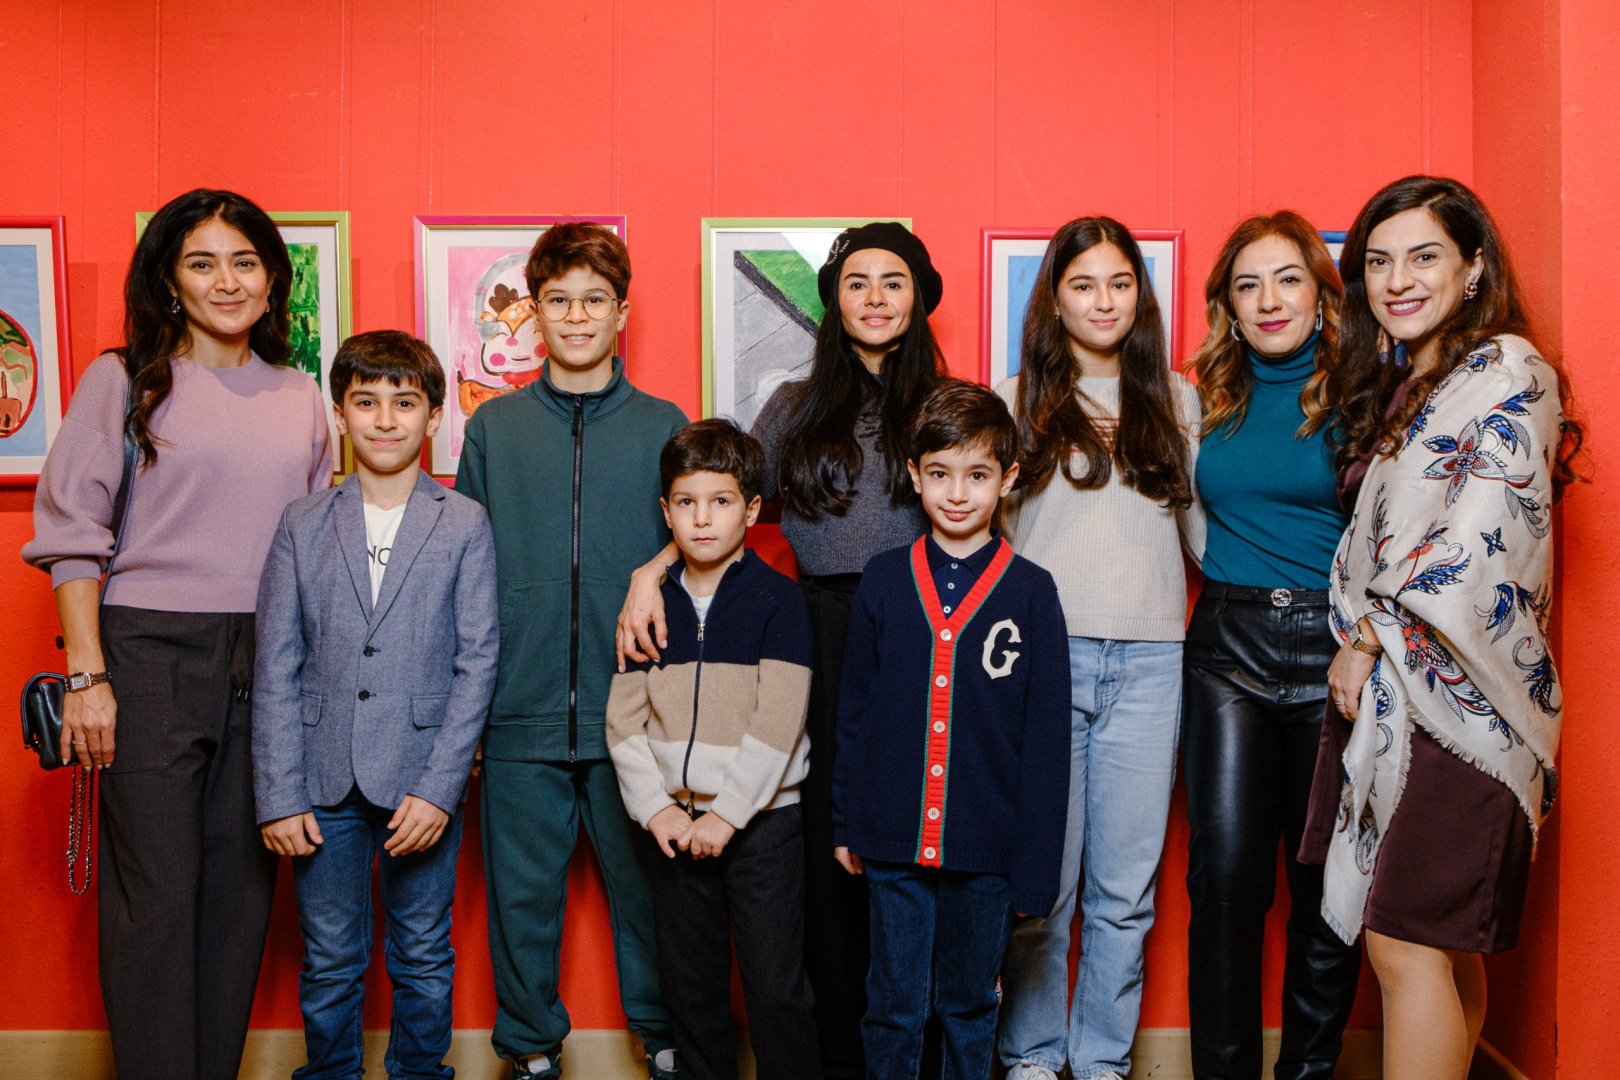 Состоялась выставка детского творчества, организованная Детским центром музыки и искусств "Sənət" (ФОТО)